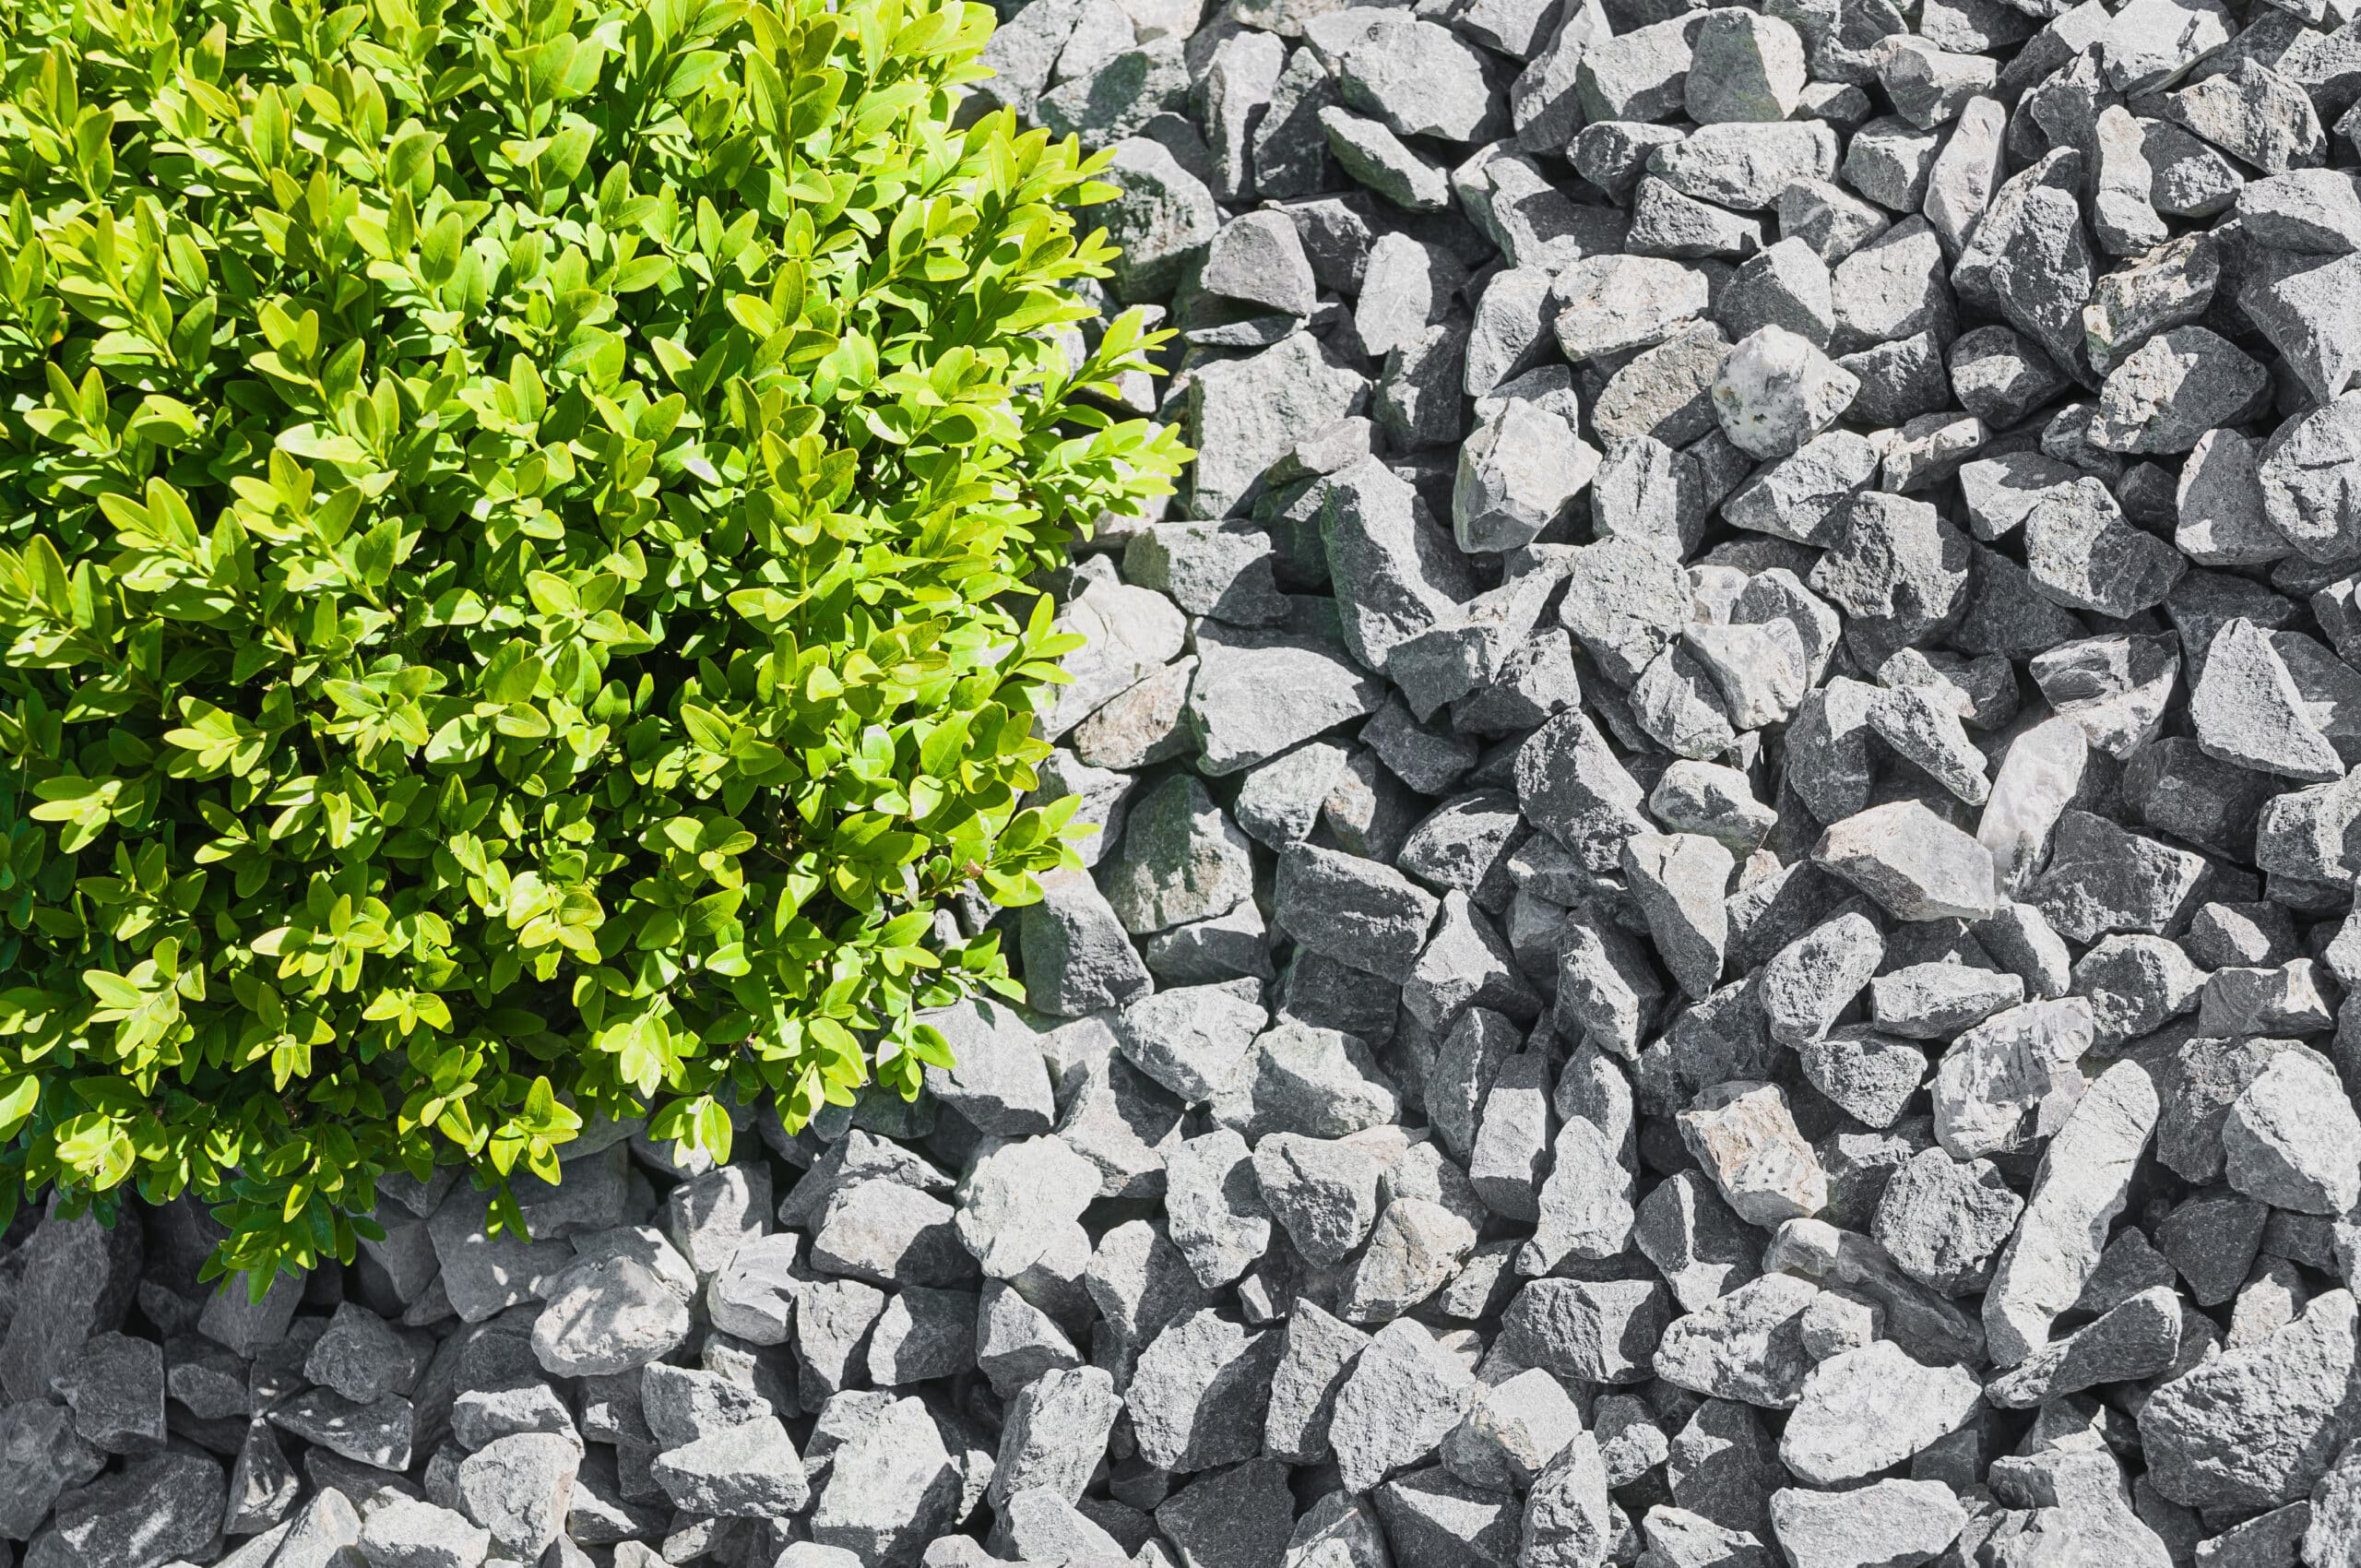 Colocación de fragmentos de roca gris triturados sueltos y clasificados uniformemente en el suelo que aparece sin esfuerzo  atractivo.  La planta verde vibrante está rodeada de grava.